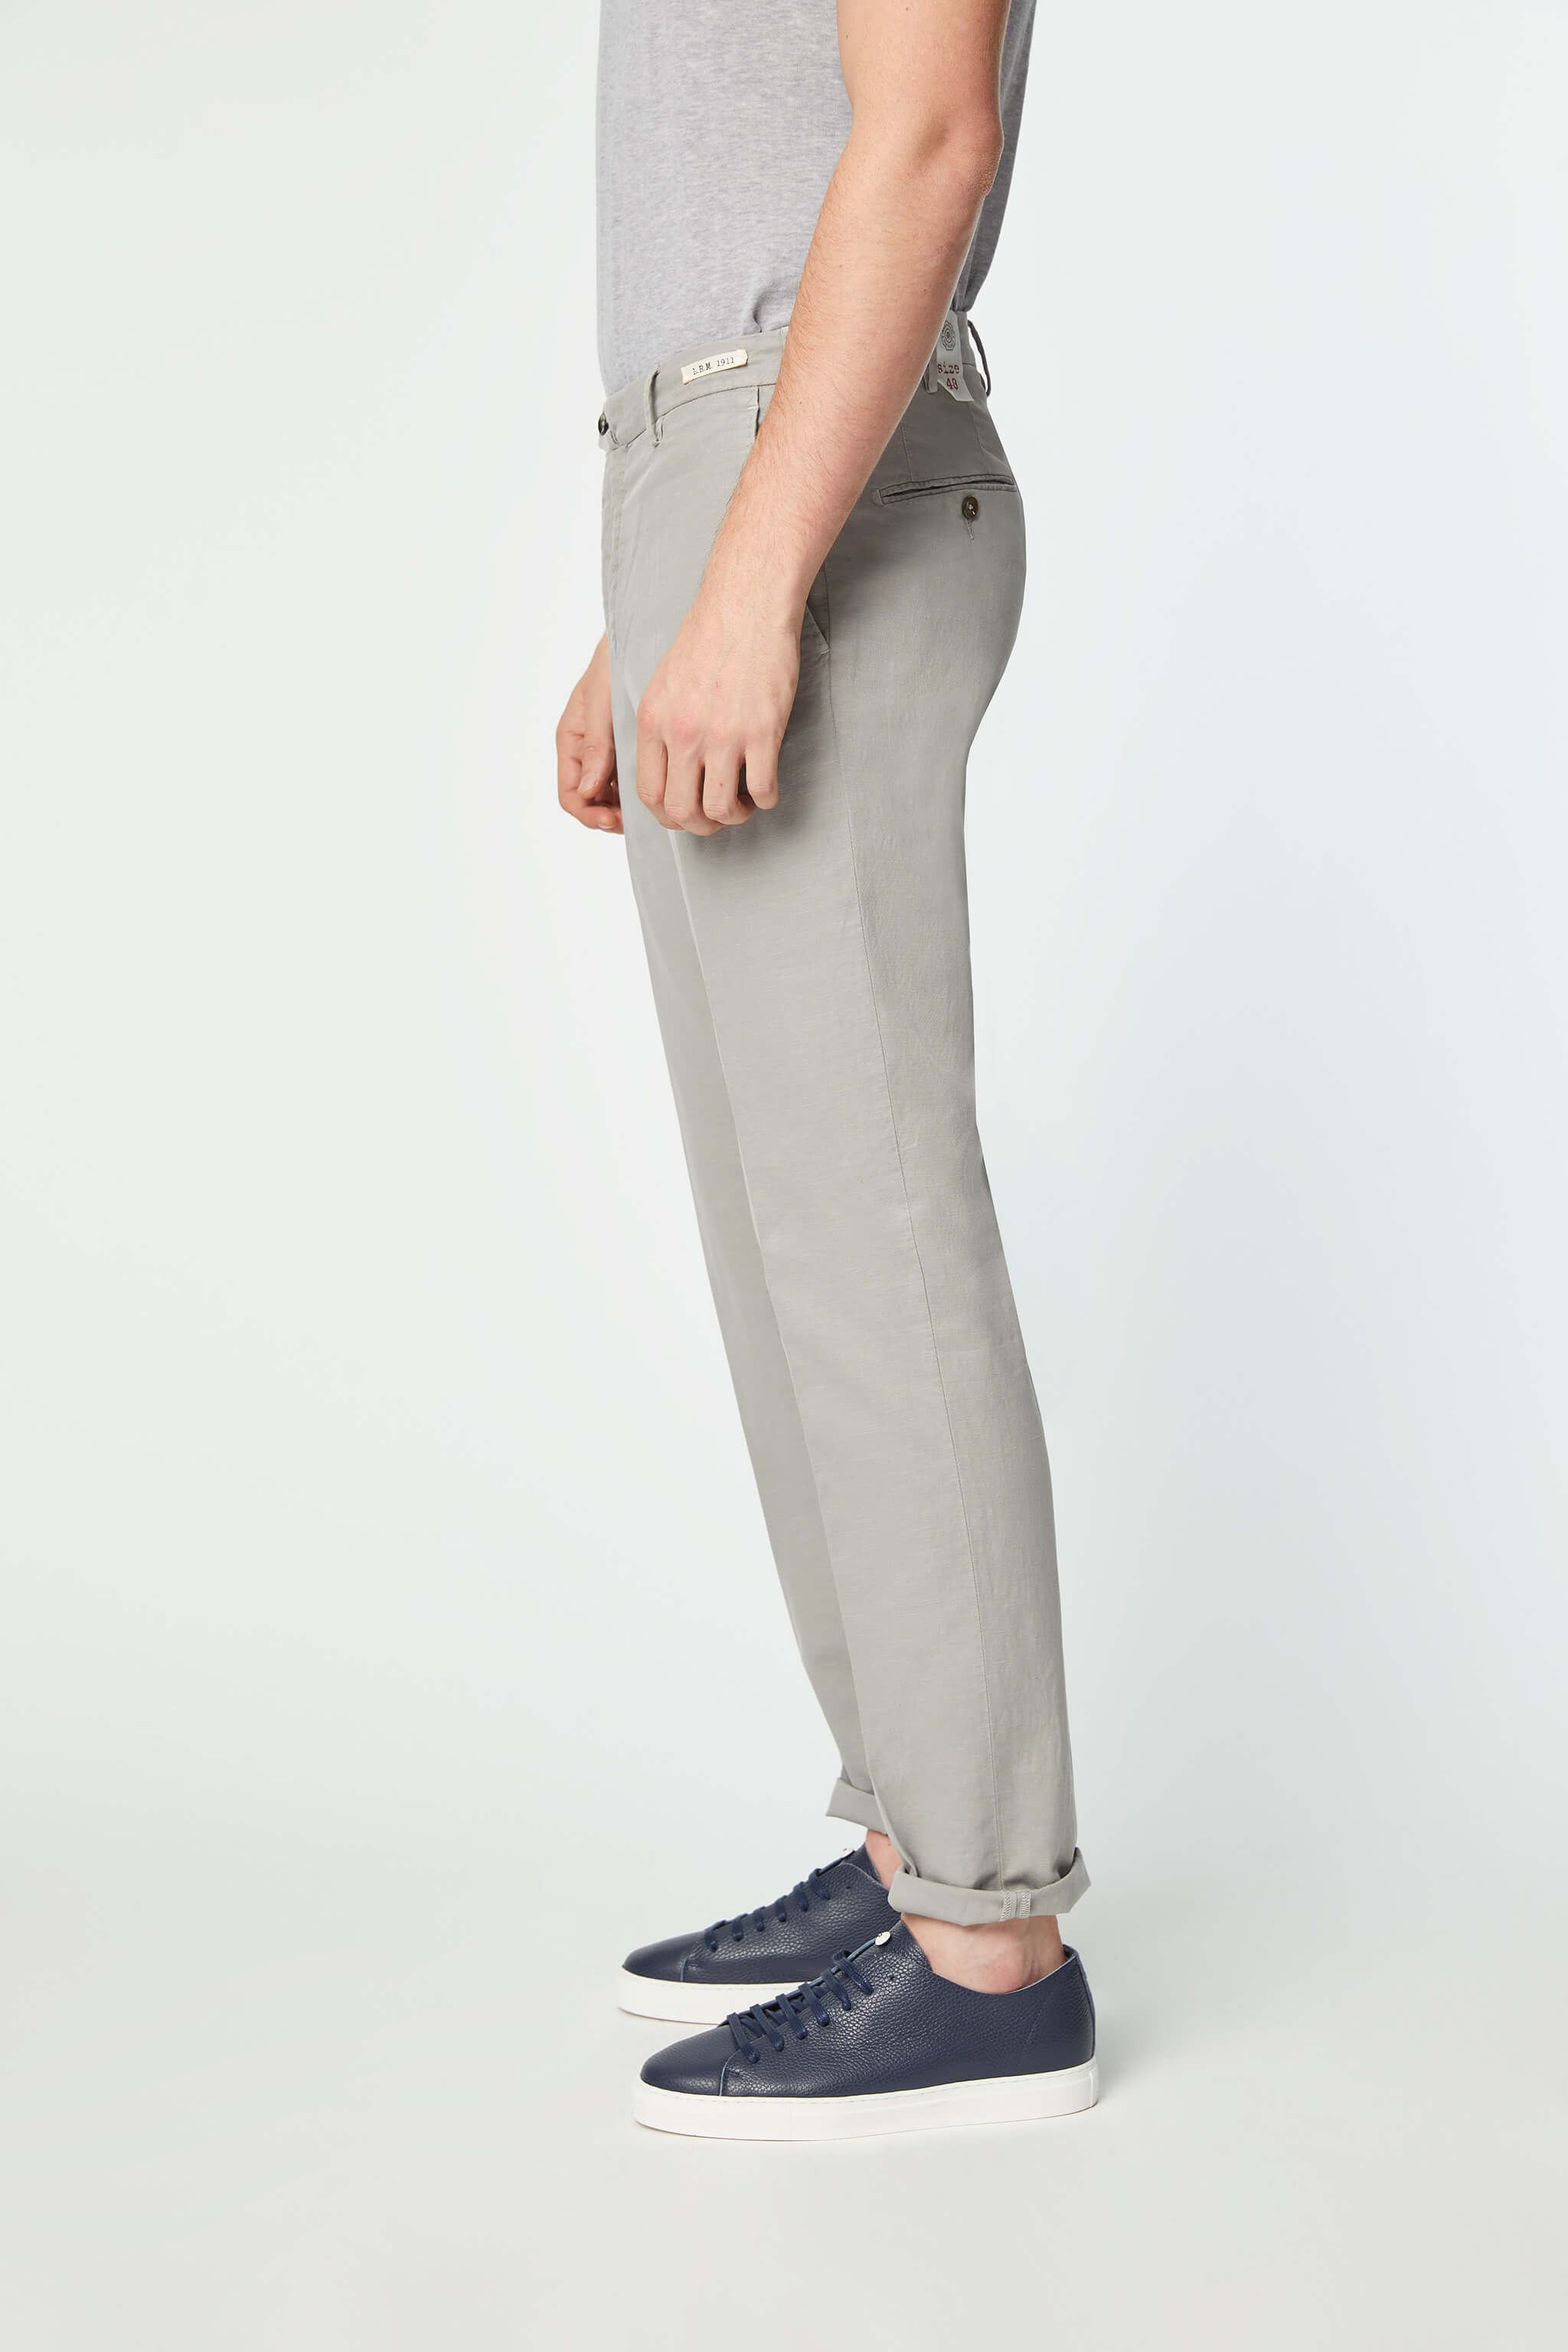 Garment-dyed ELTON pants in light Gray